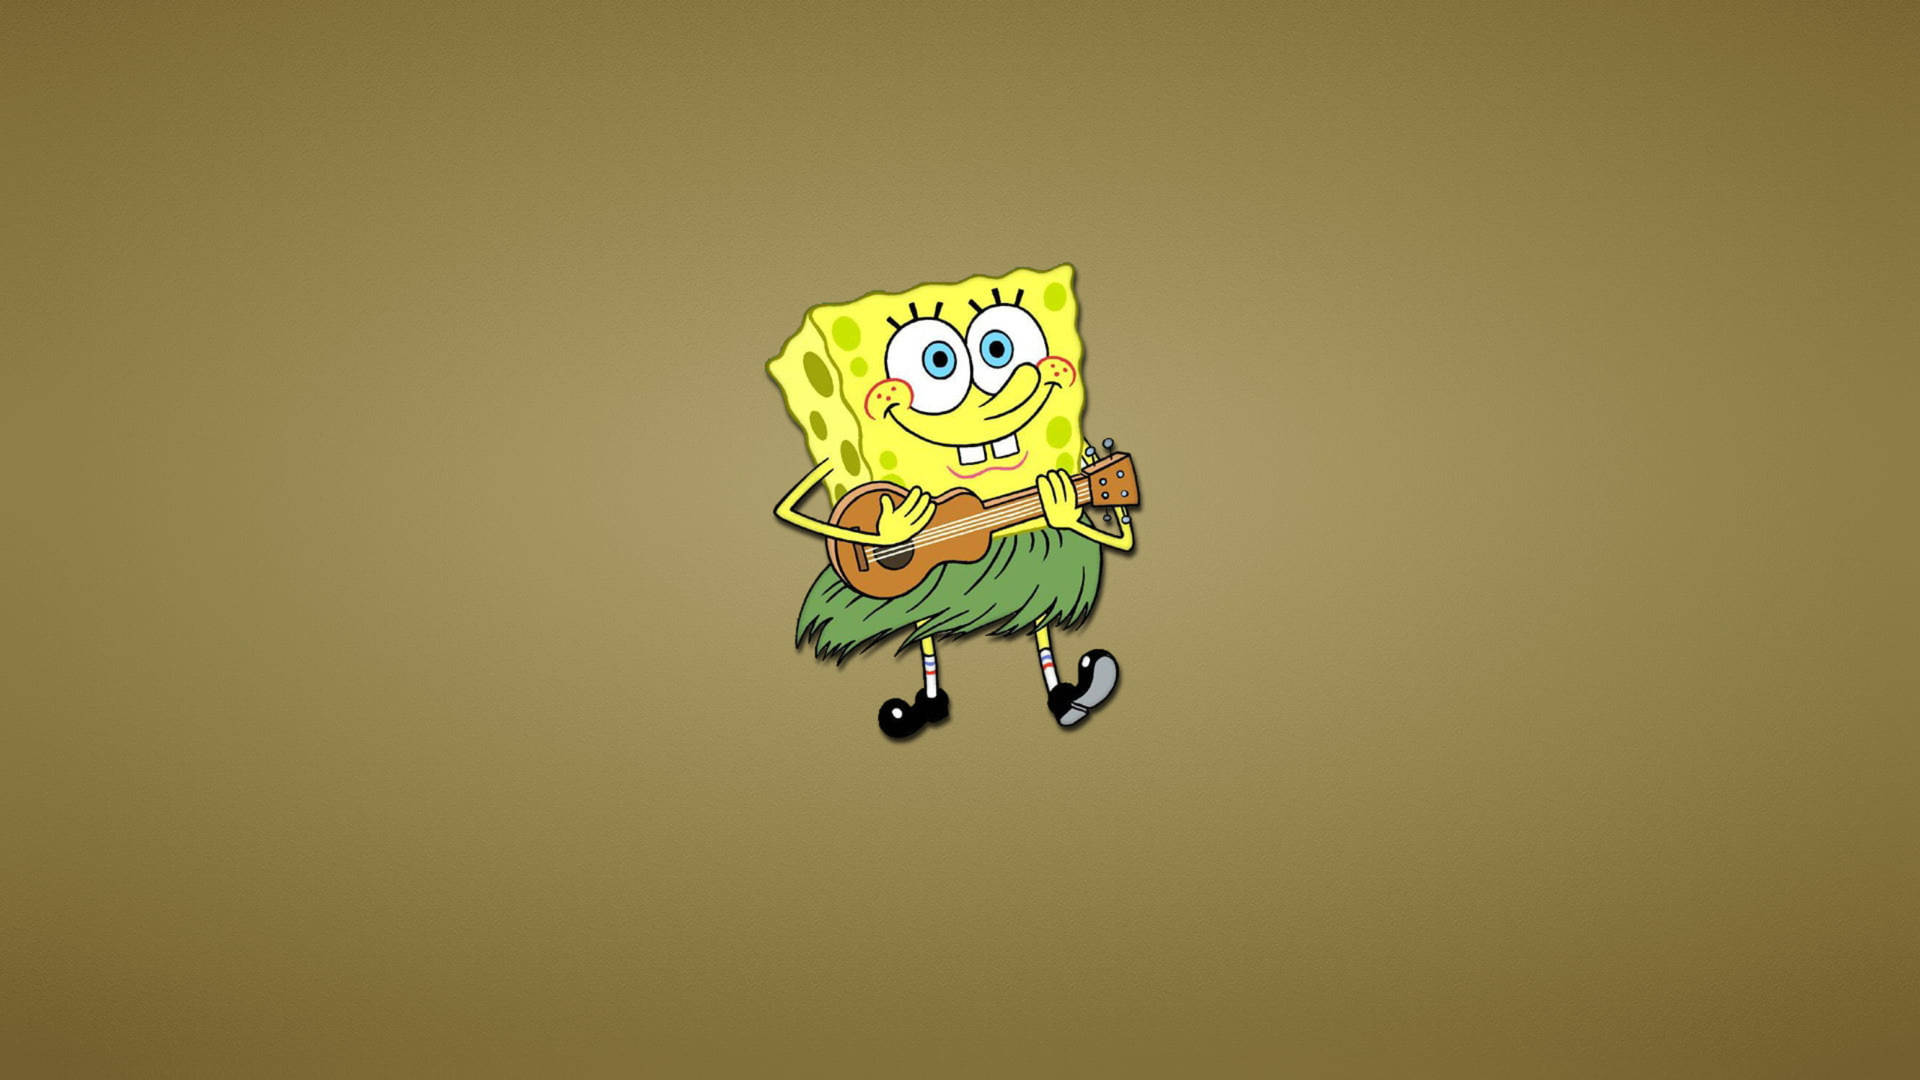 Spongebob With Ukulele Background